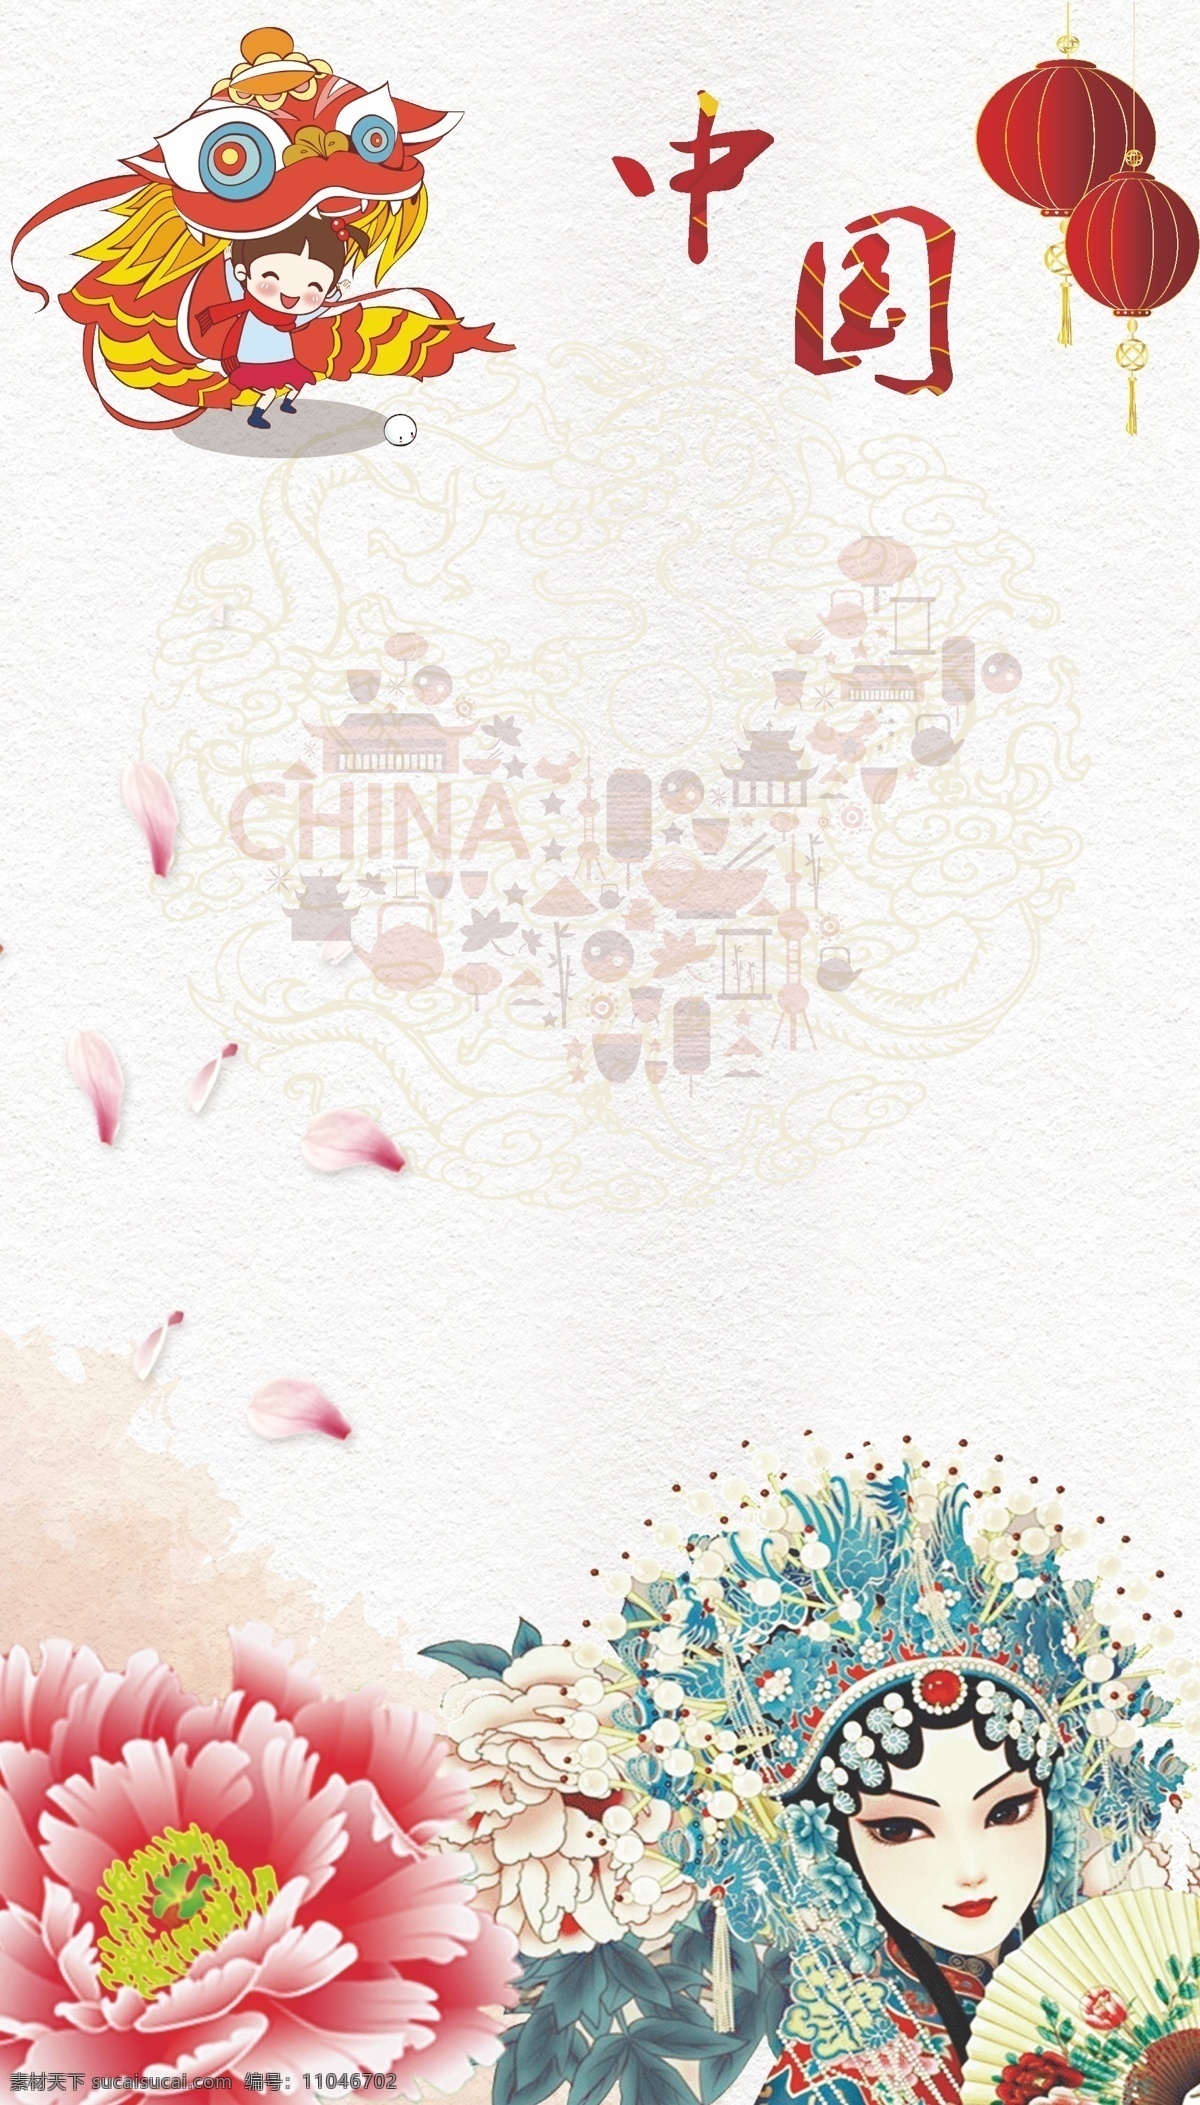 中国文化海报 中国文化 中国文化素材 古典文化 古代文化 文明古国 中国文化遗址 国文化展板